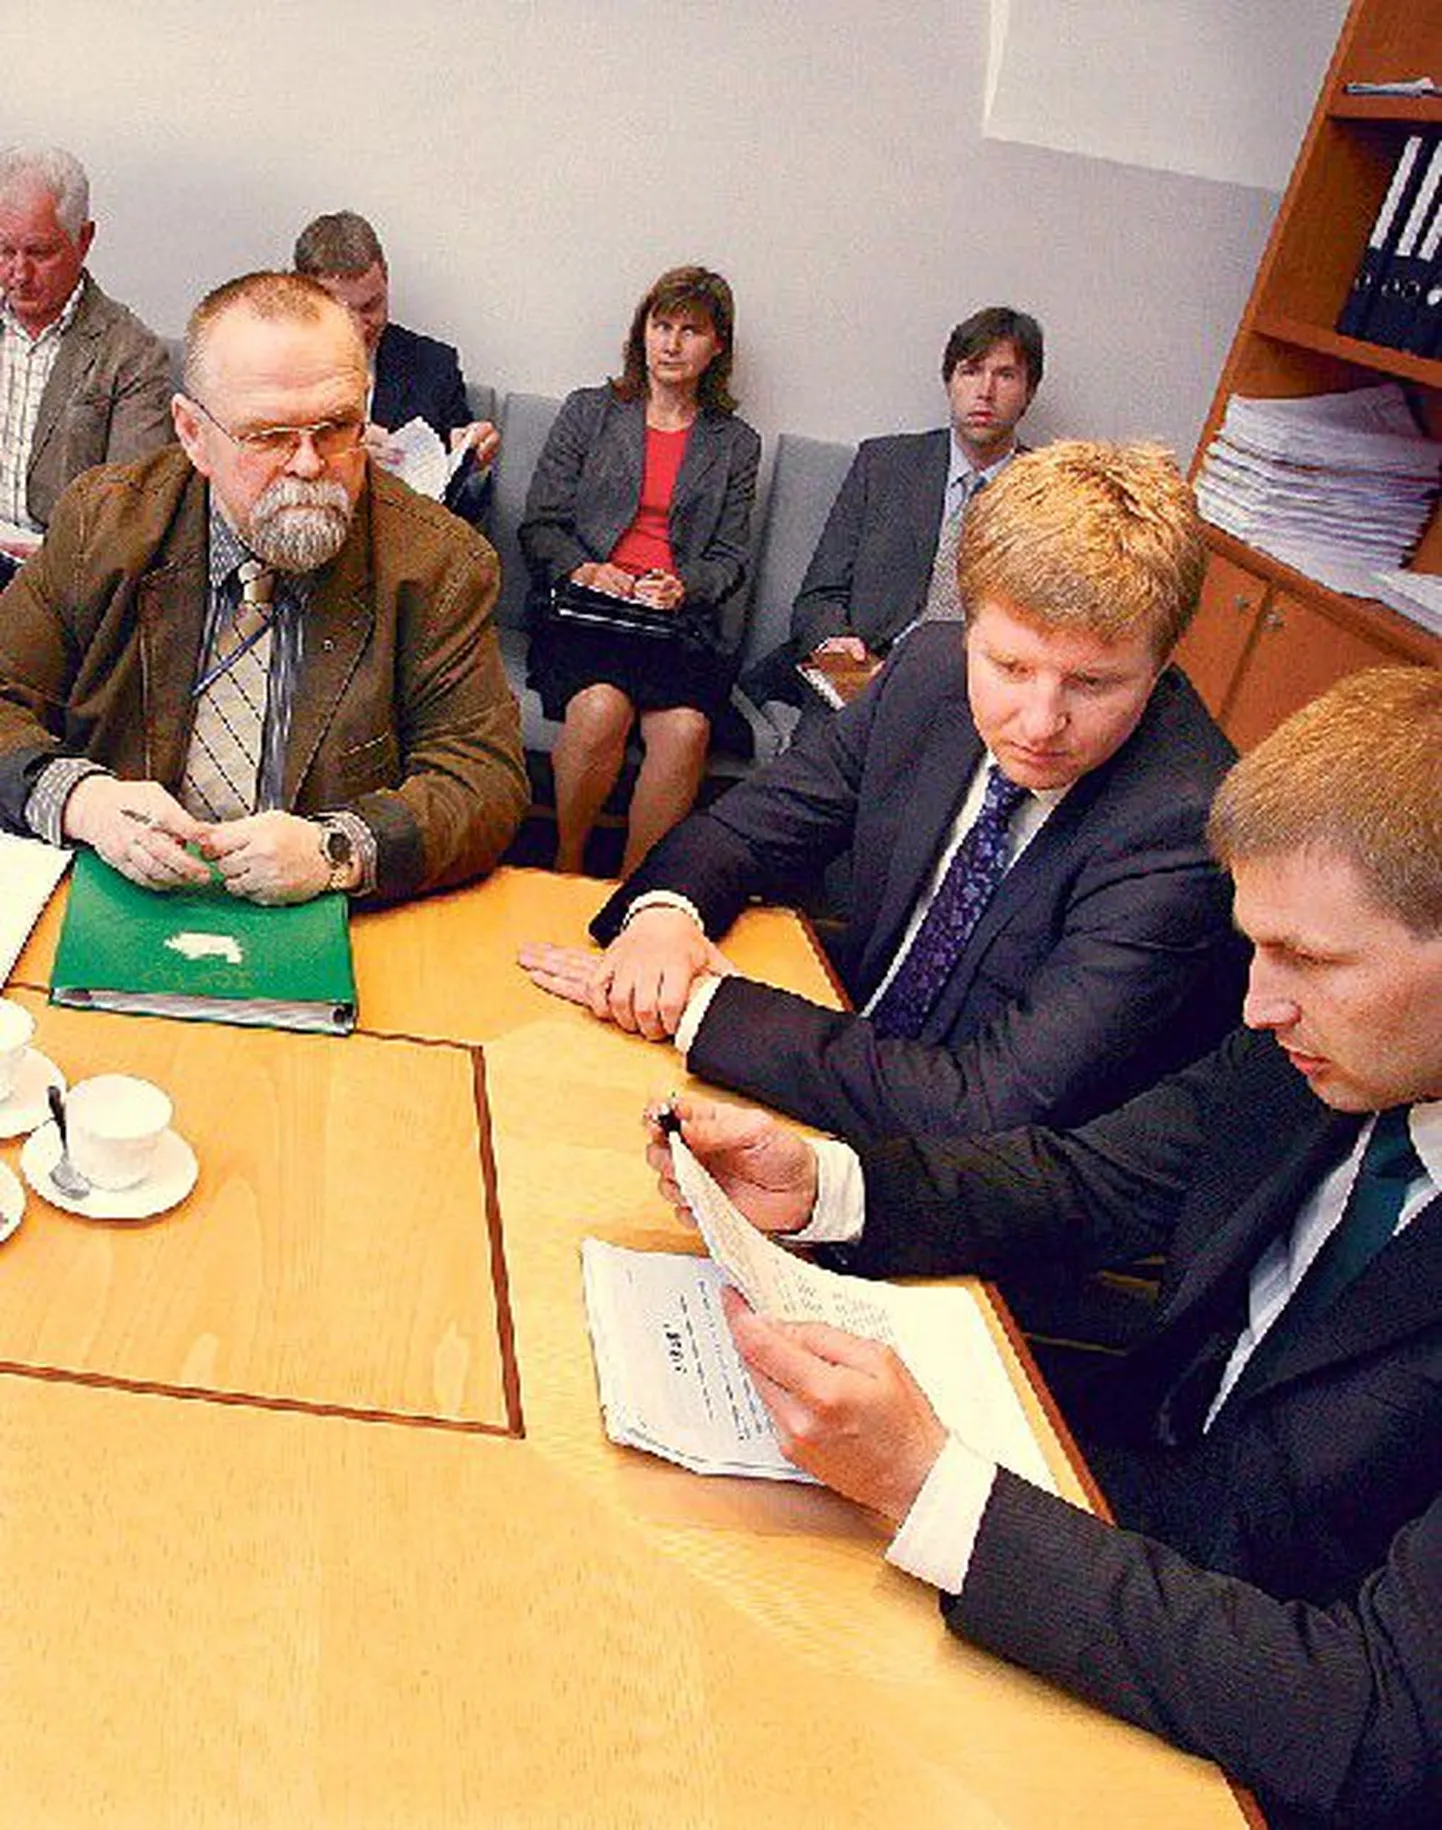 Слева направо: руководитель эстонских профсоюзов Харри Талига, Тармо Крийс и министр социальных дел Ханно Певкур. (Архив)